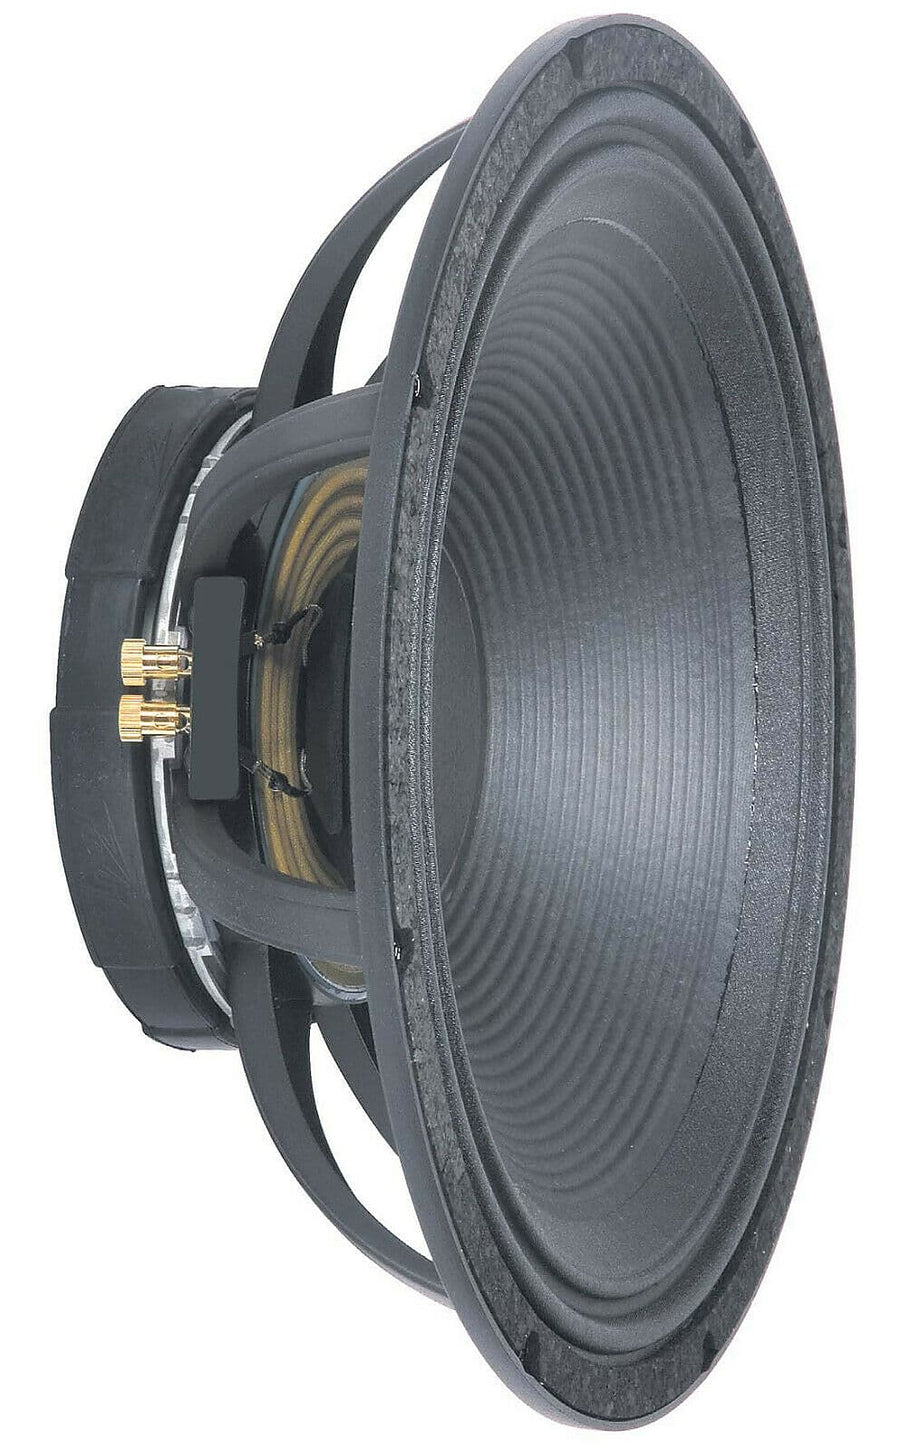 Peavey 15" Lo Max Complete Speaker 00560290